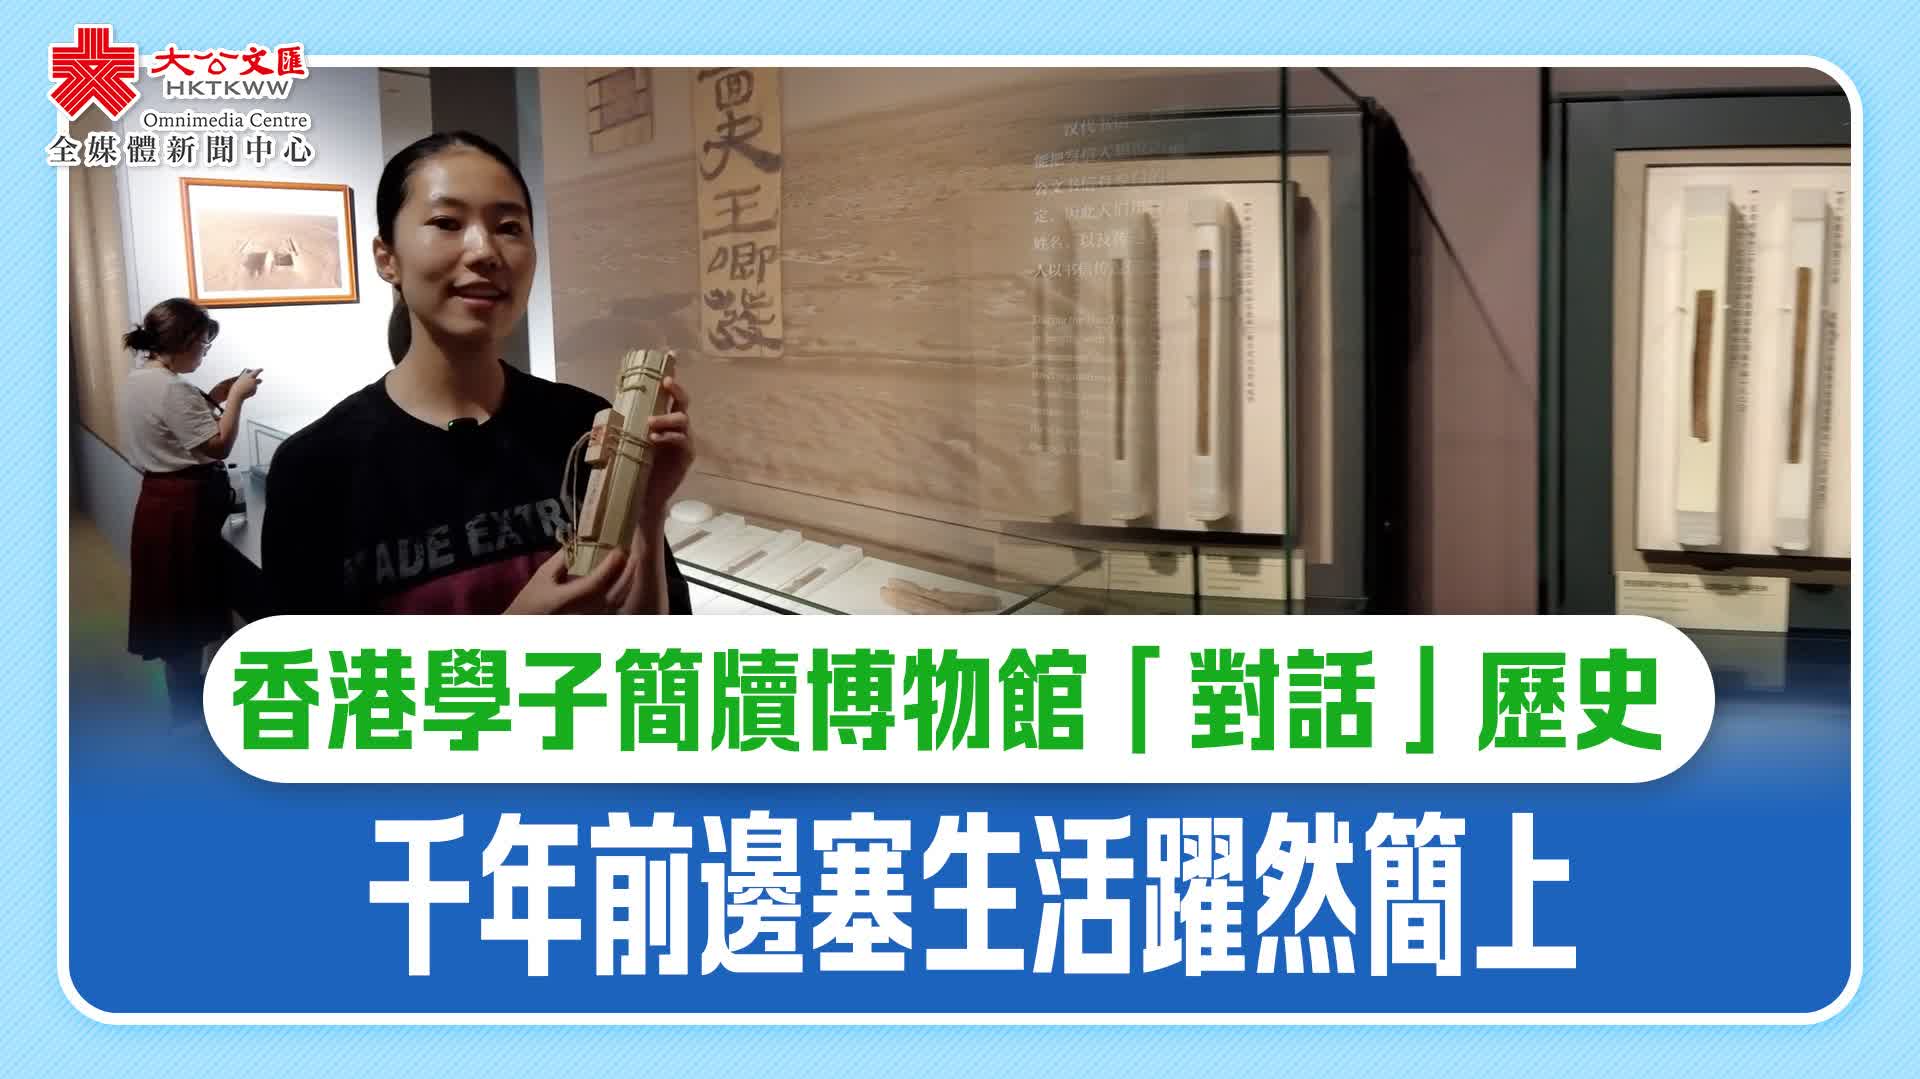 香港學子簡牘博物館「對話」歷史　千年前邊塞生活躍然簡上